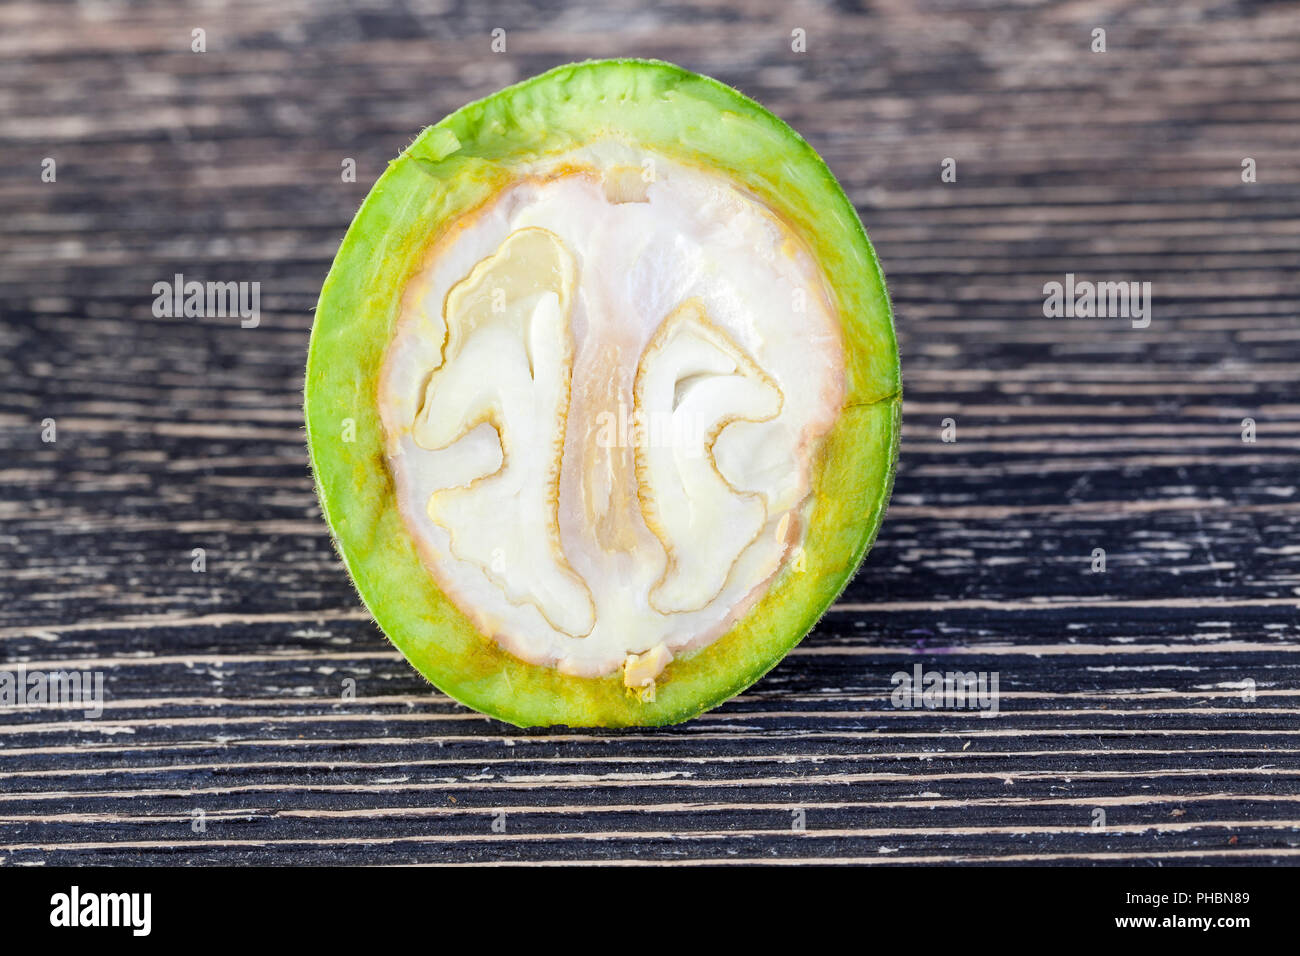 Un rompe grossolanamente e tagliare noce verde con un frutto non sagomata, metà del dado mostra la sua futura struttura Foto Stock